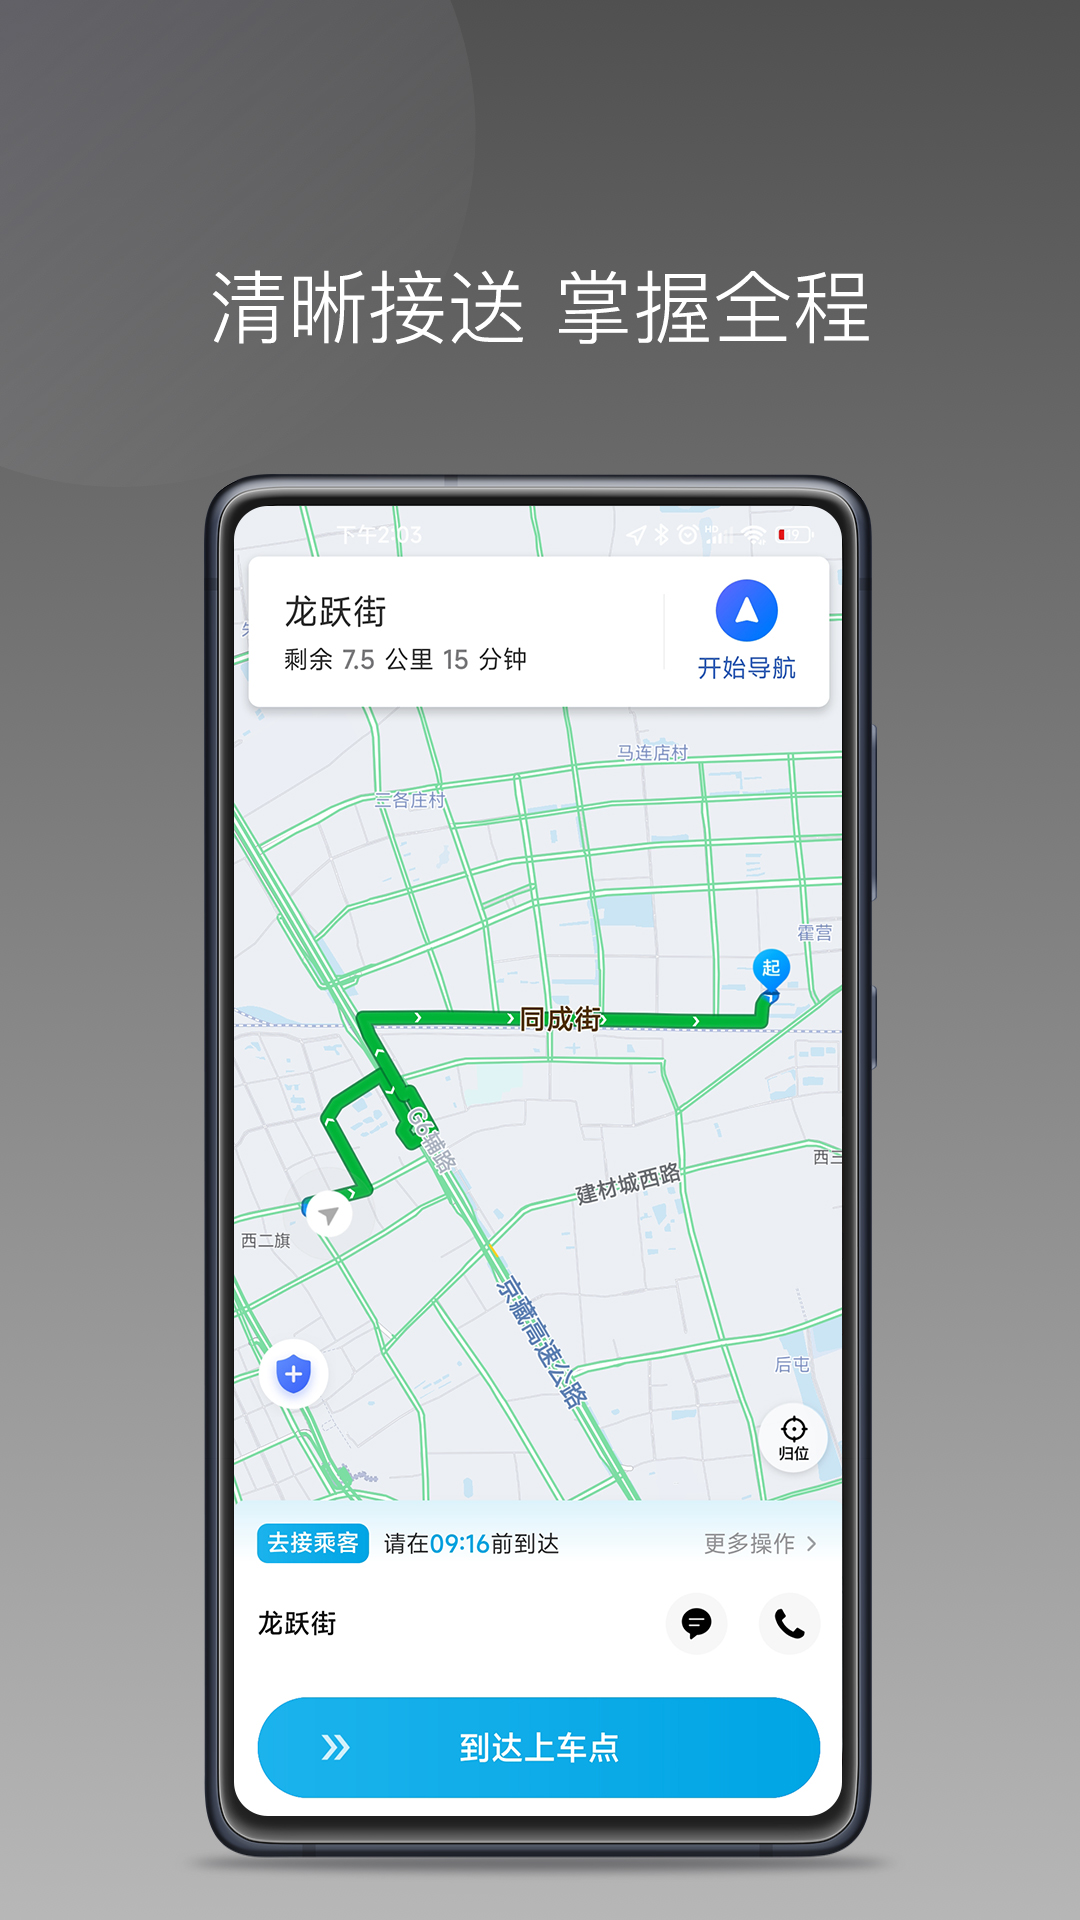 益民出行司机端1.7.0版本app下载老版本图3: